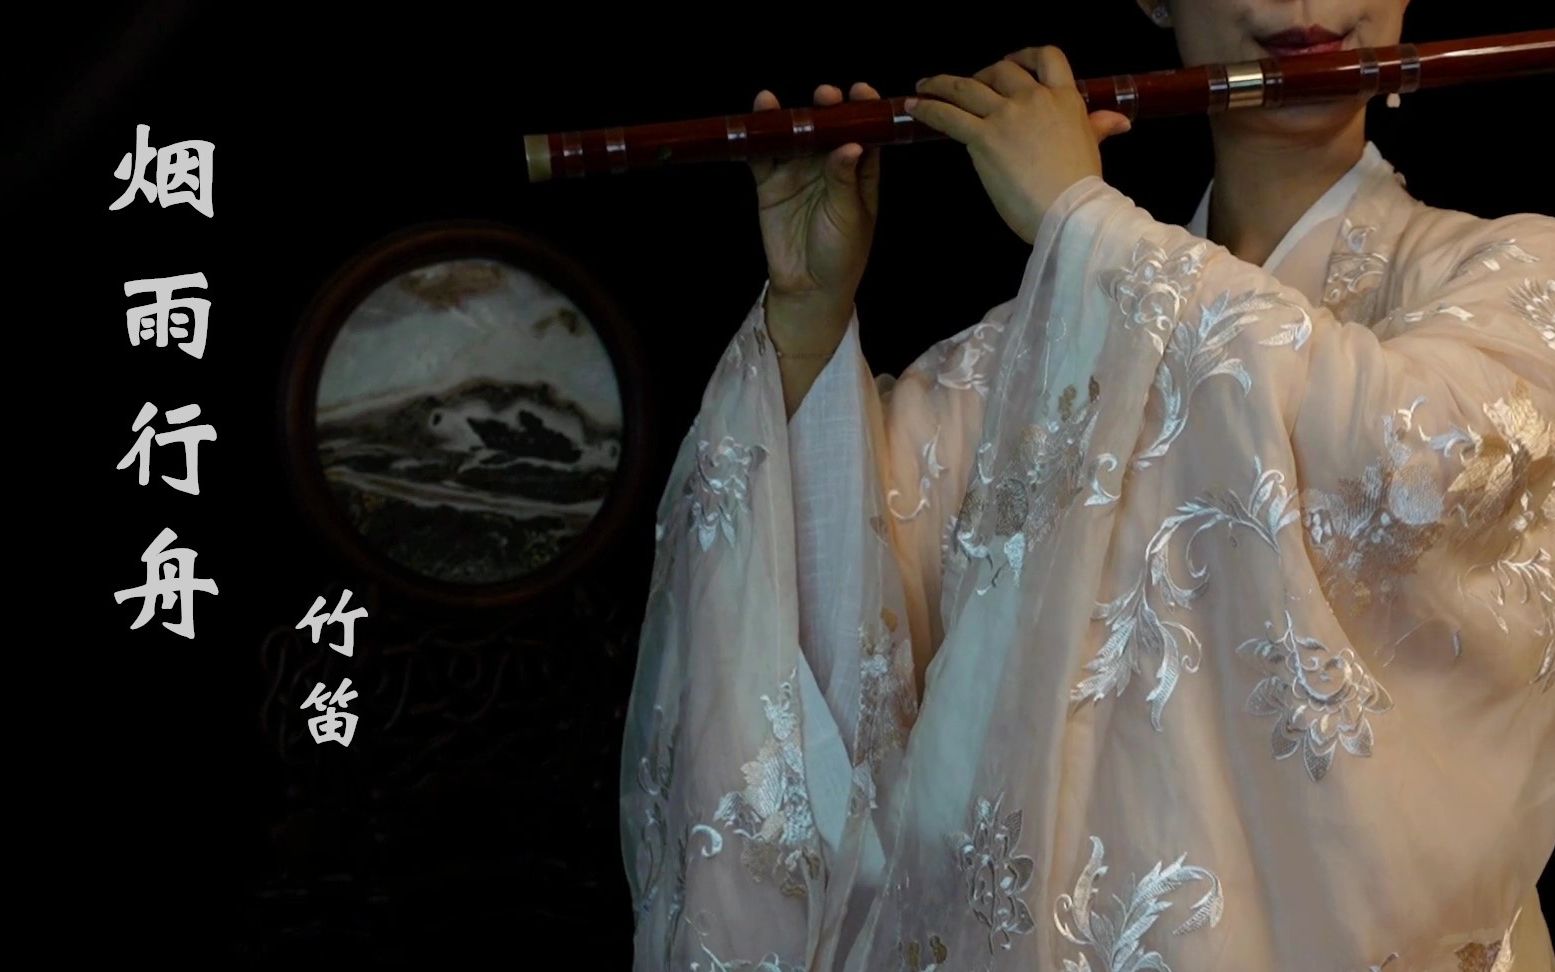 【烟雨行舟】竹笛 一曲委婉优美的古风歌曲 用笛子描绘江南烟雨 山水如墨染